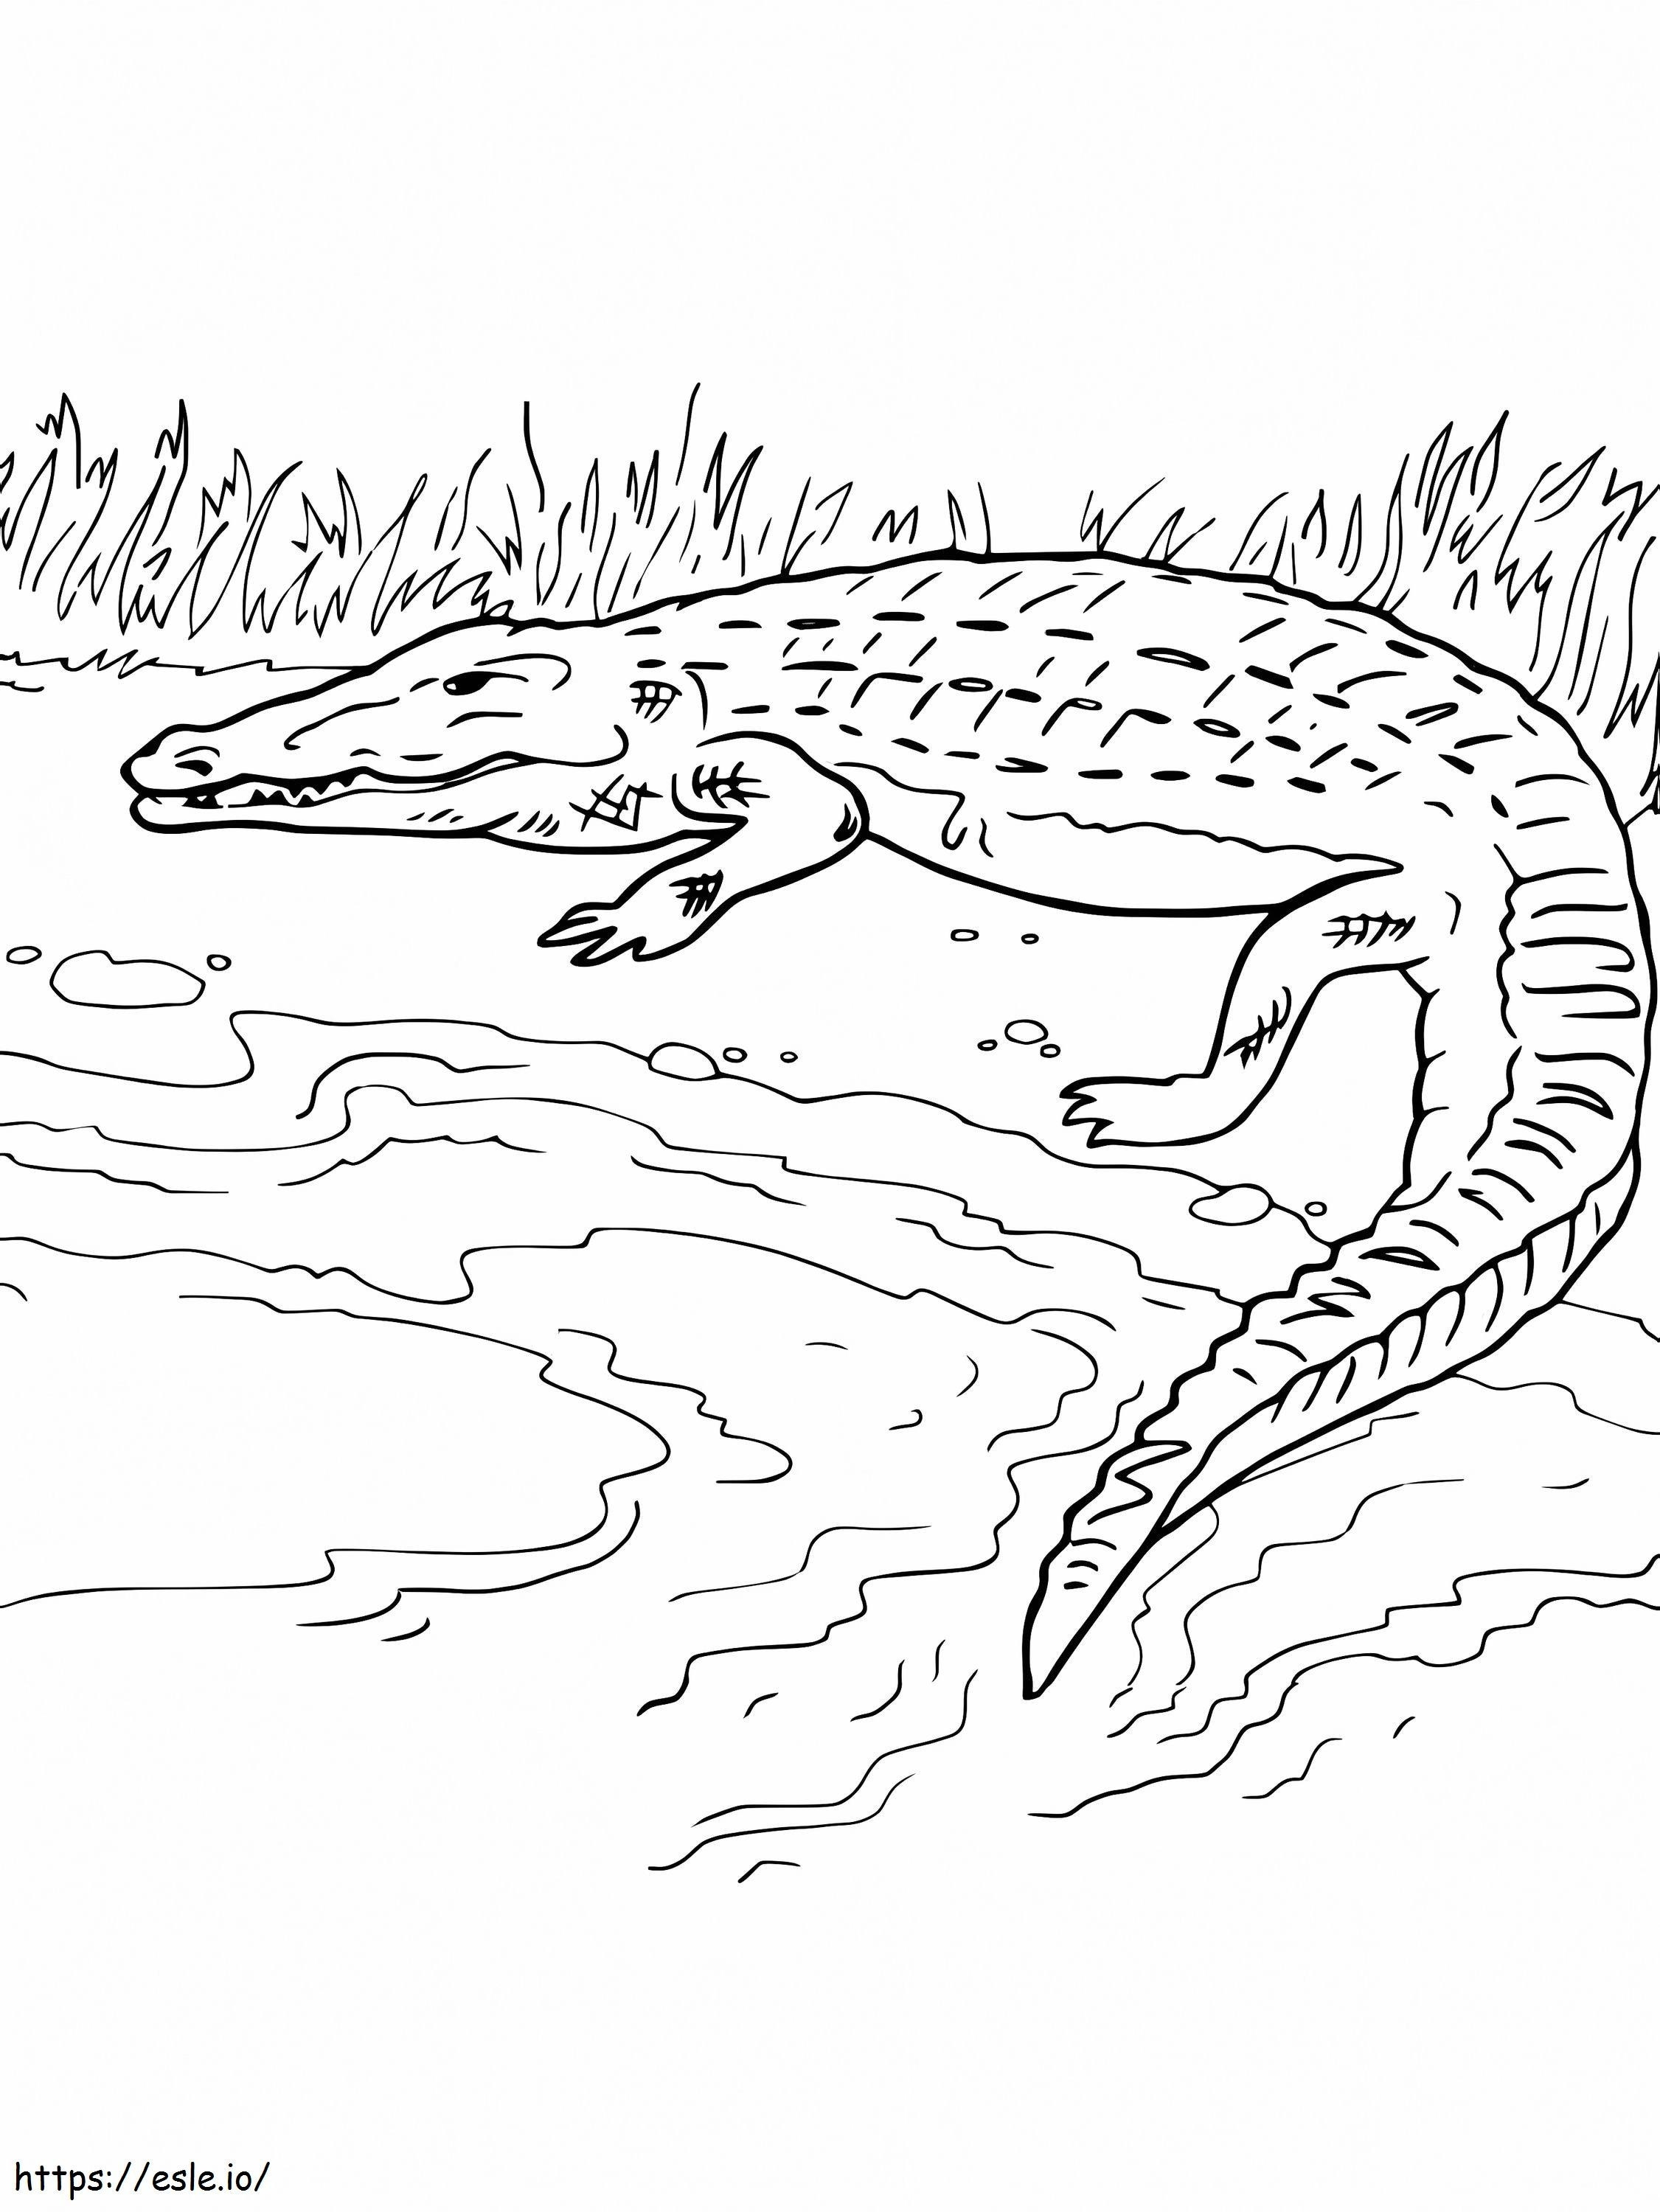 Crocodil Pe Mal de colorat